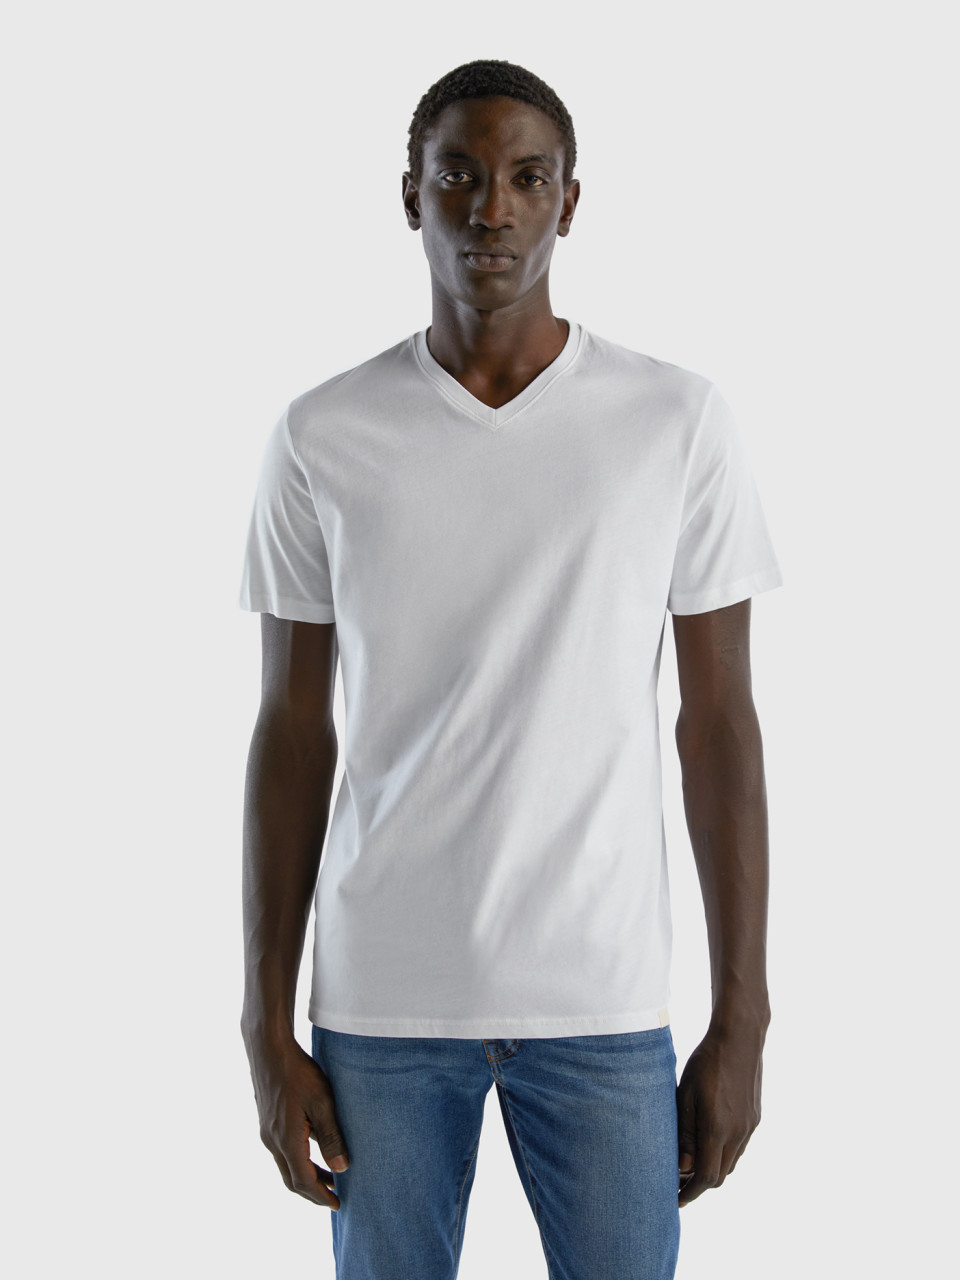 Benetton, T-shirt In Long Fiber Cotton, White, Men